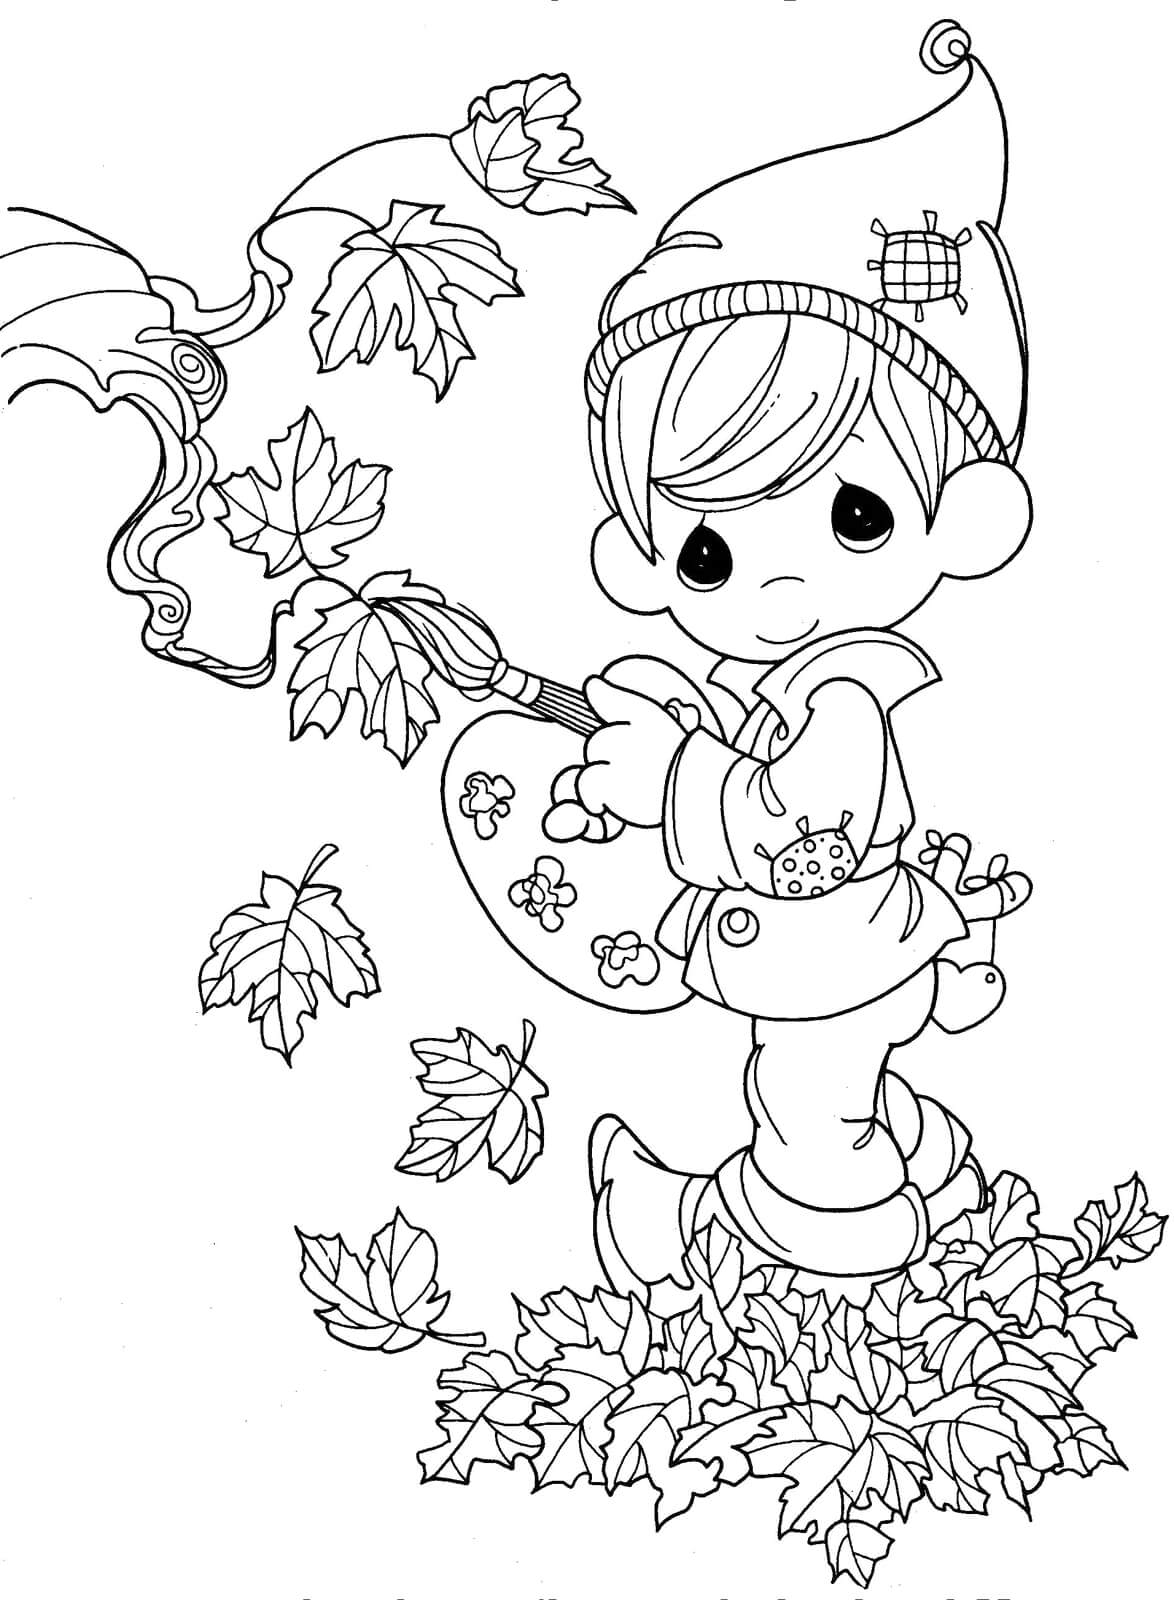 Раскраска Мальчик раскрашивает листья